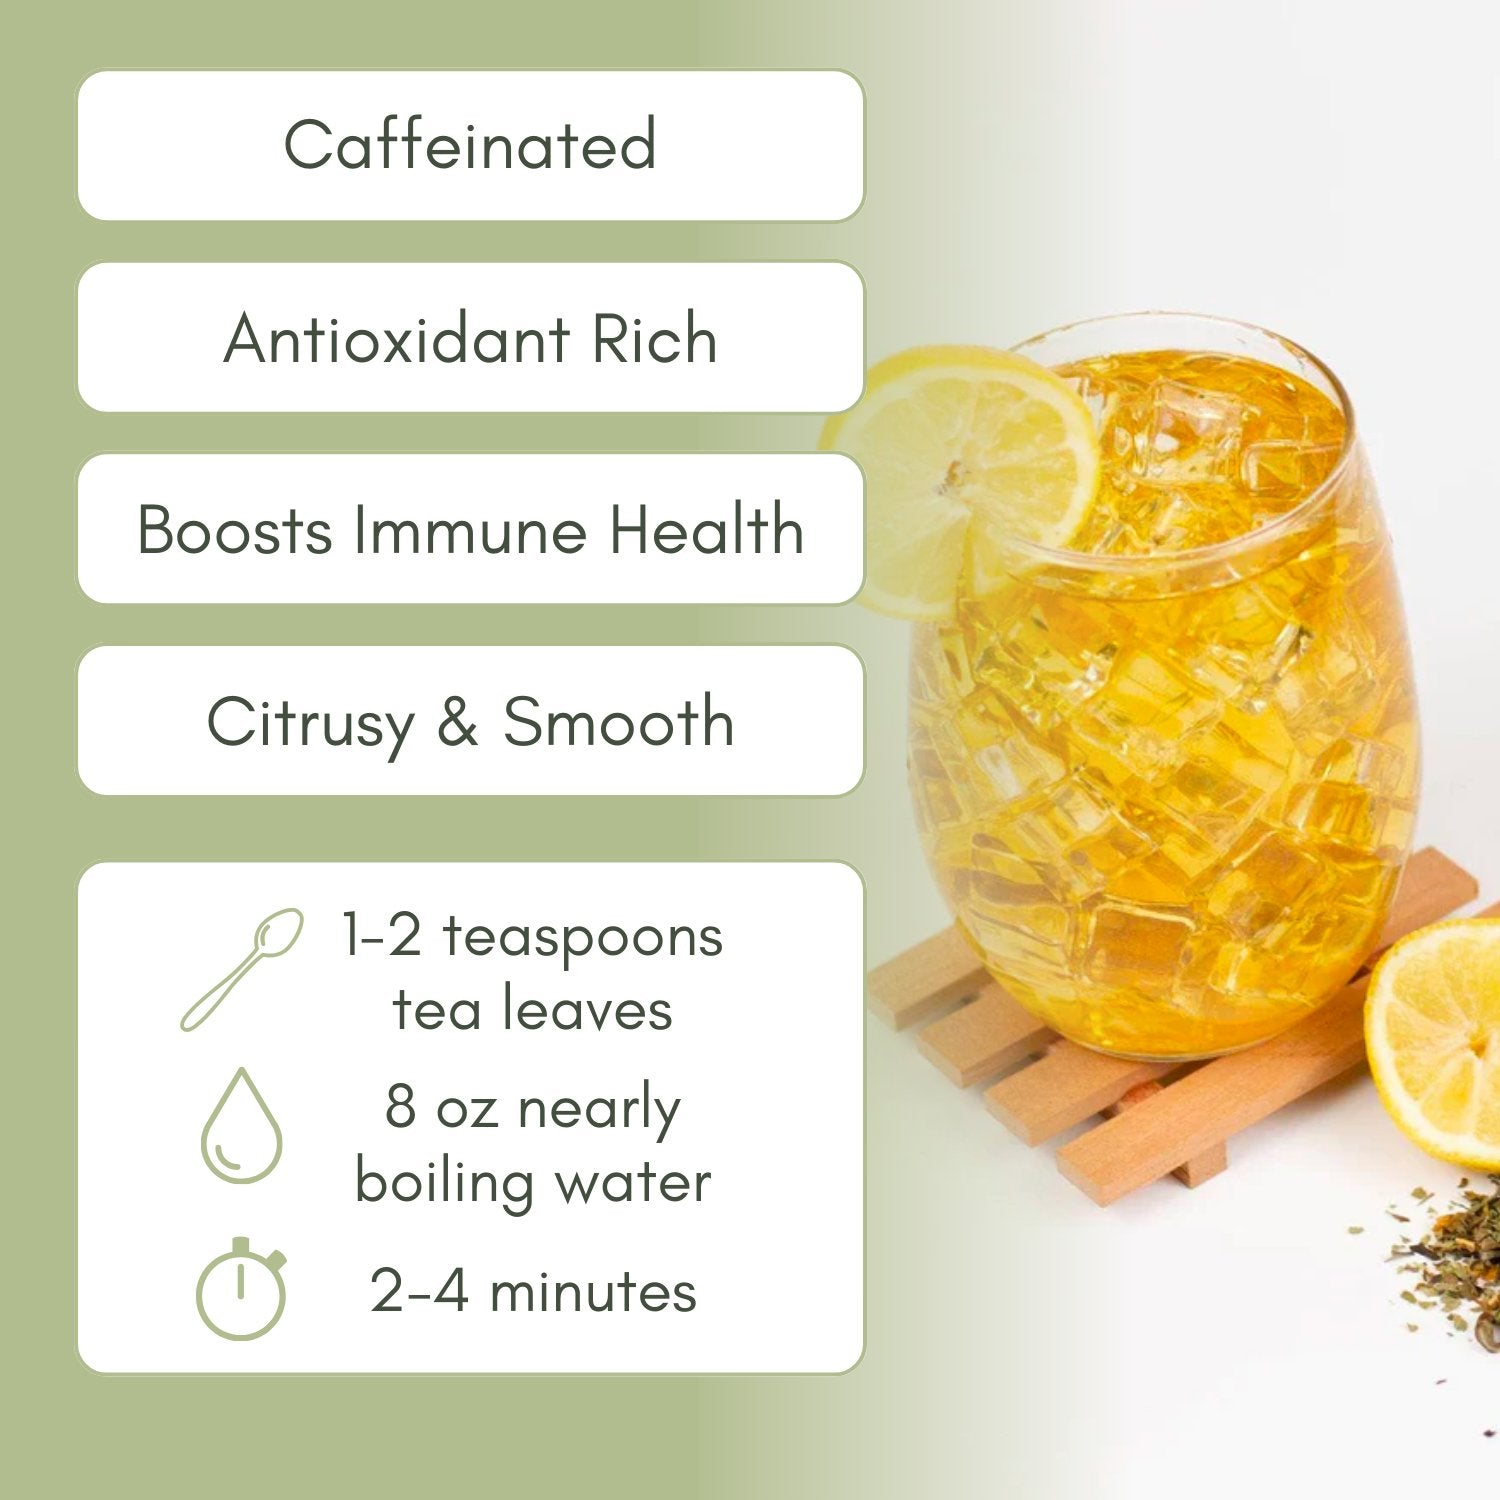 Organic Lemon Turmeric Tea - Loose Leaf Tea - Full Leaf Tea Company